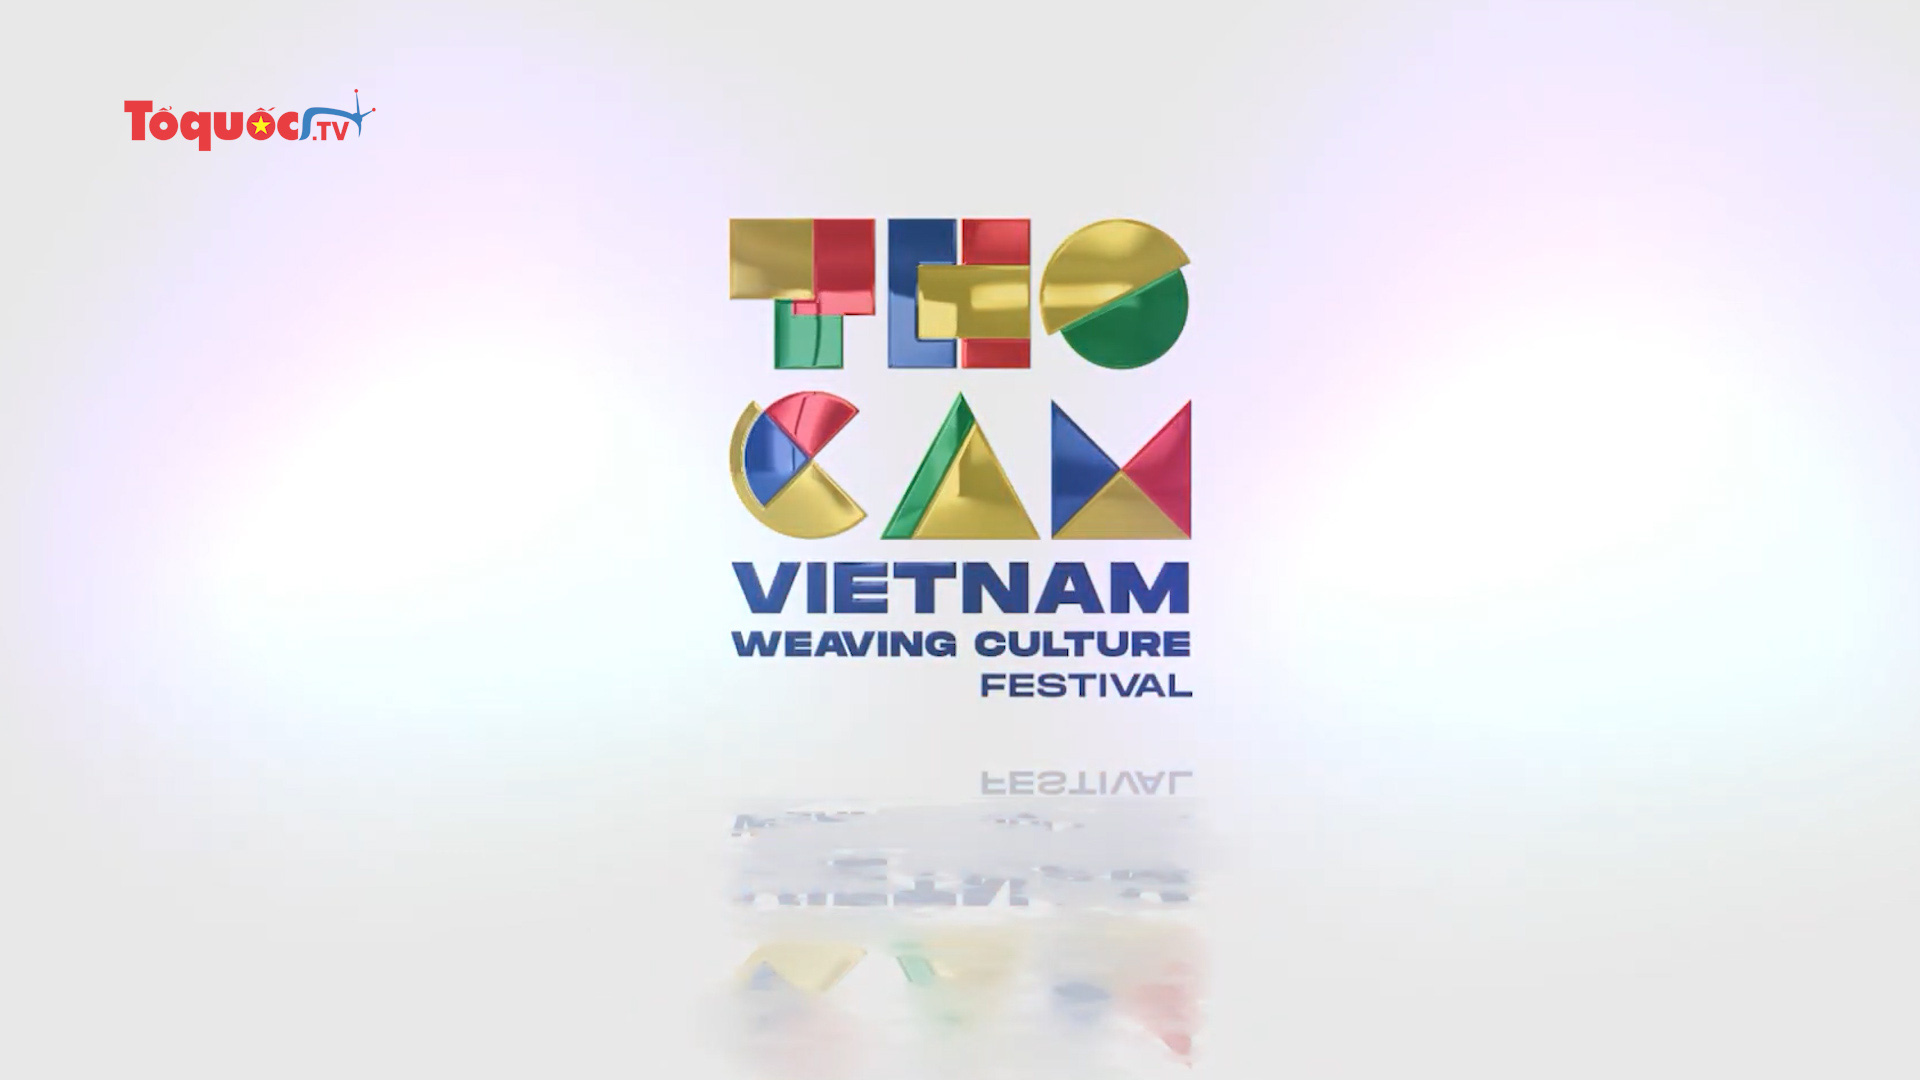 Đắk Nông tổ chức Lễ hội Văn hóa Thổ cẩm Việt Nam lần thứ 2